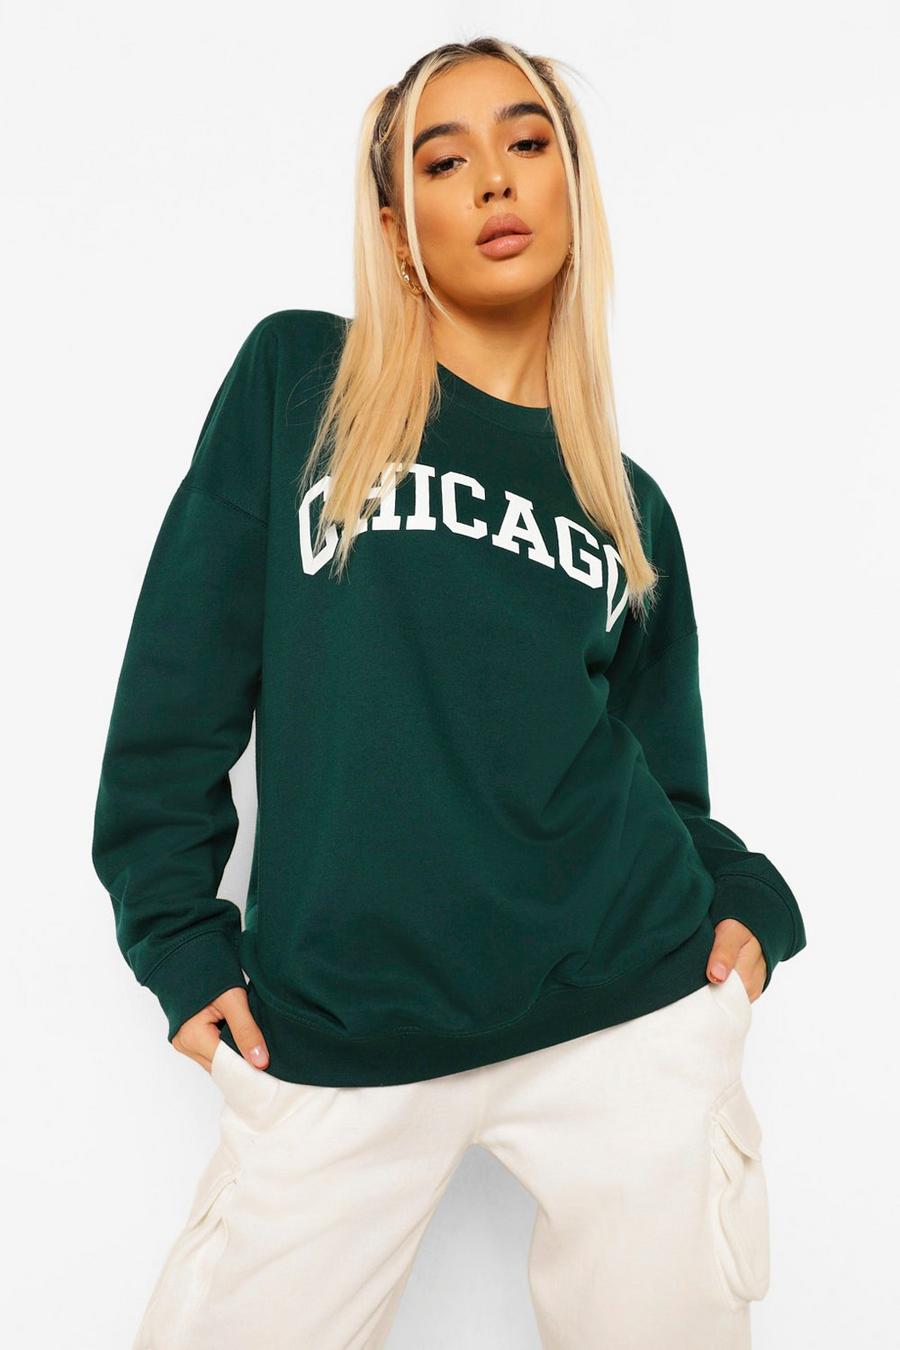 Camiseta extragrande con eslogan "Chicago", Forest image number 1